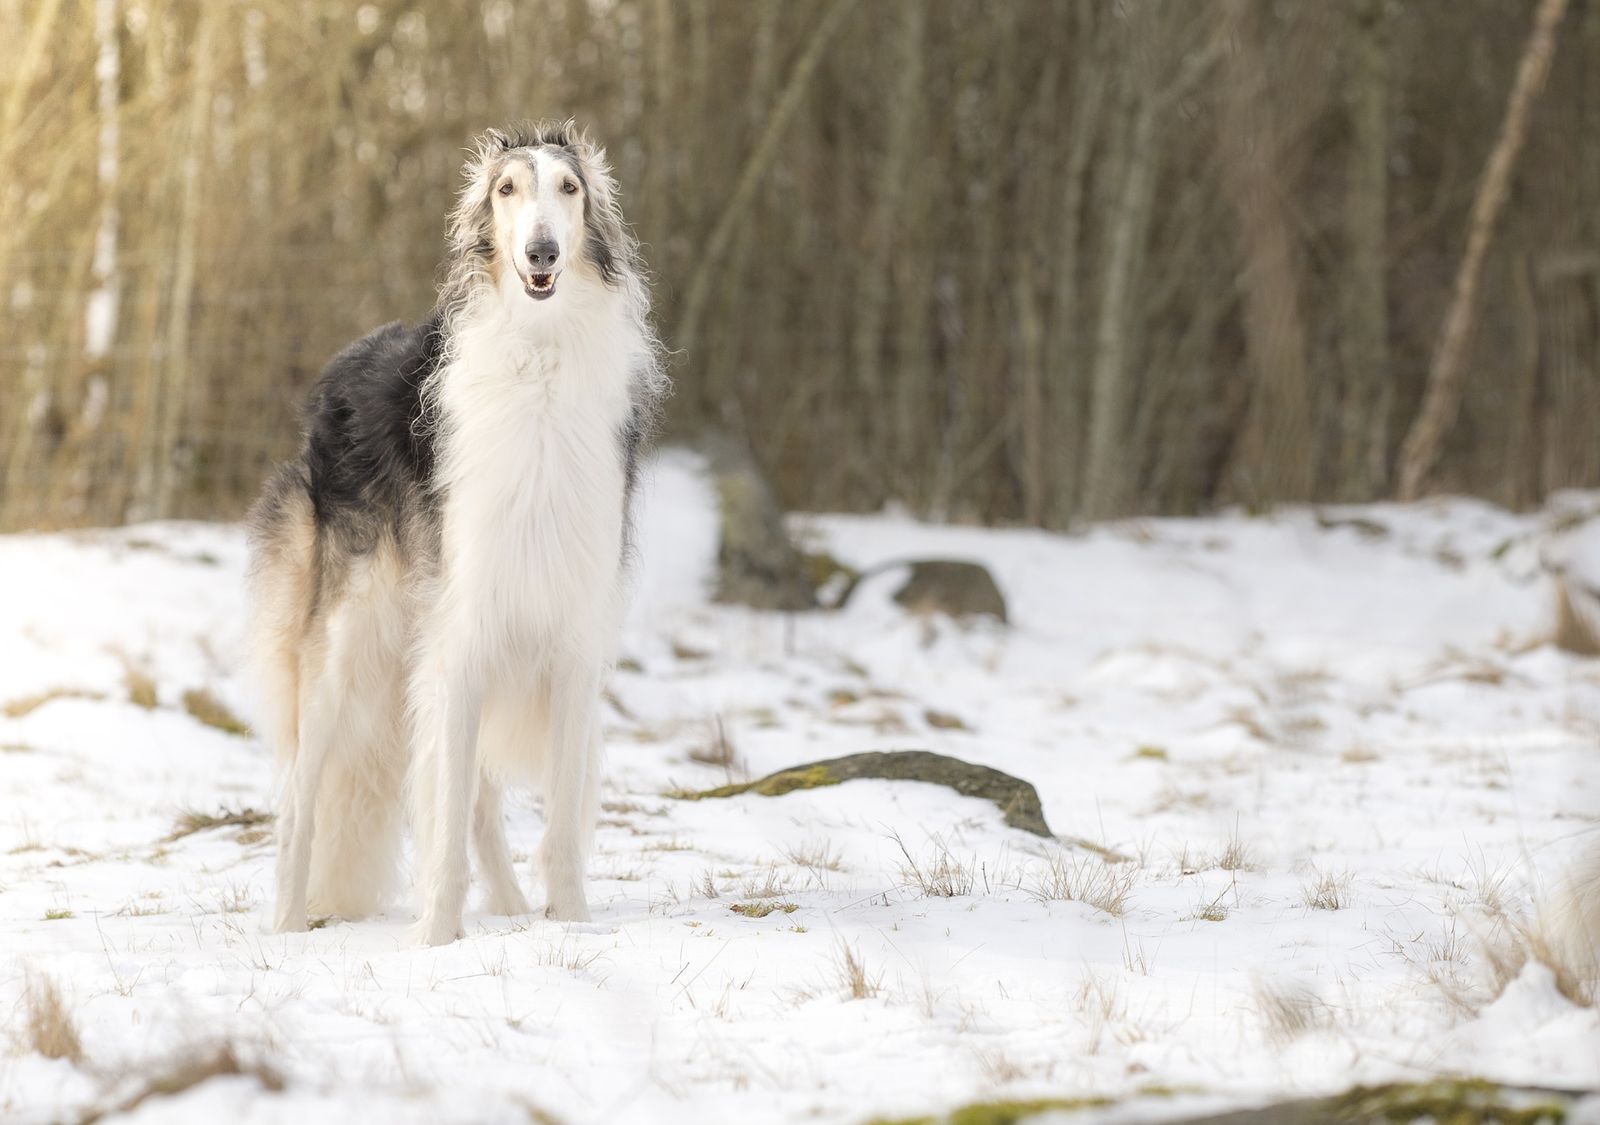 Ein weiß-grauer langhaariger Windhund steht im Profil auf dem schneebedeckten Boden vor einem Wald und schaut konzentriert auf den Betrachter